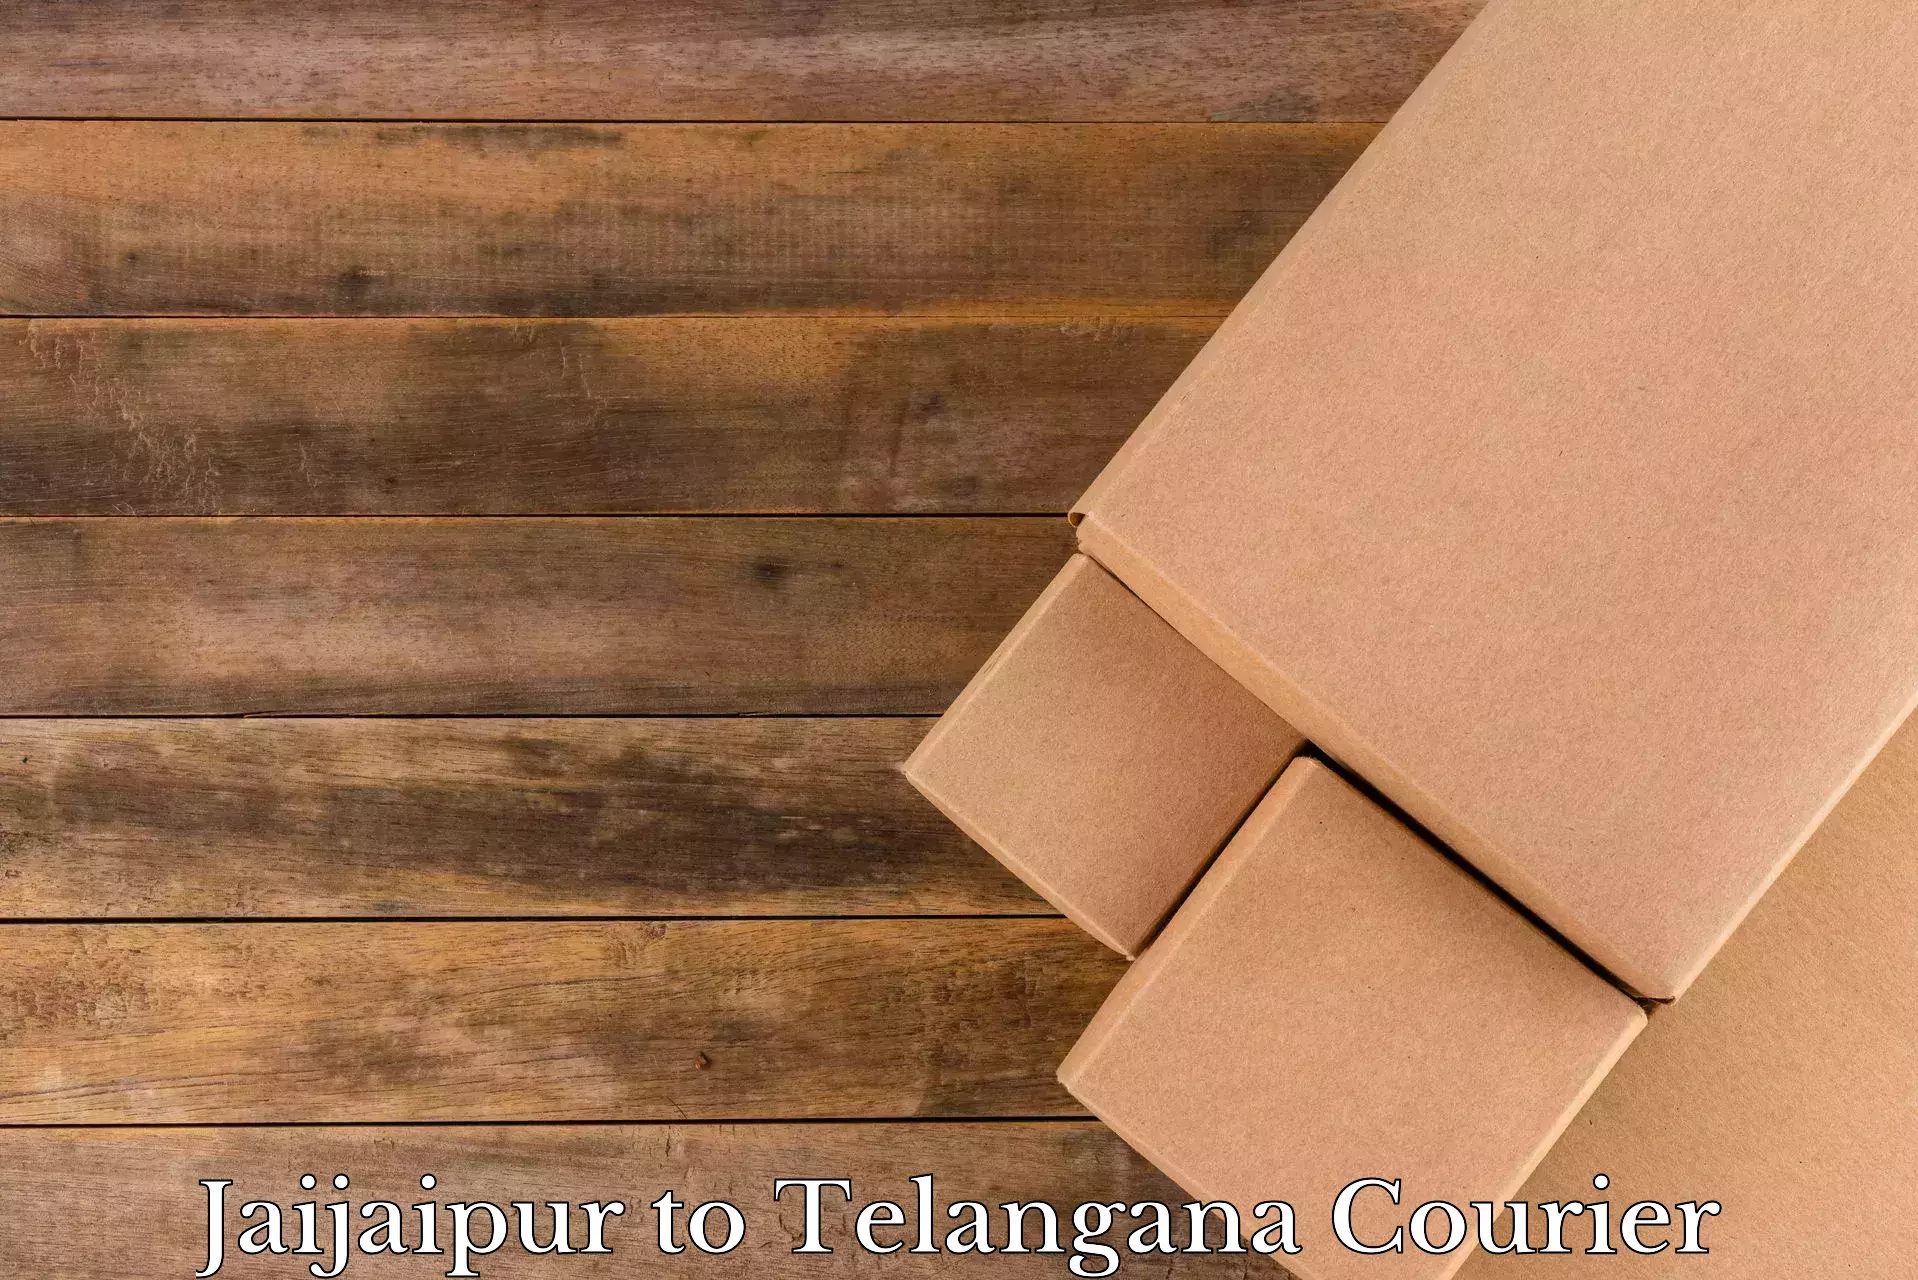 Moving and packing experts Jaijaipur to Ibrahimpatnam